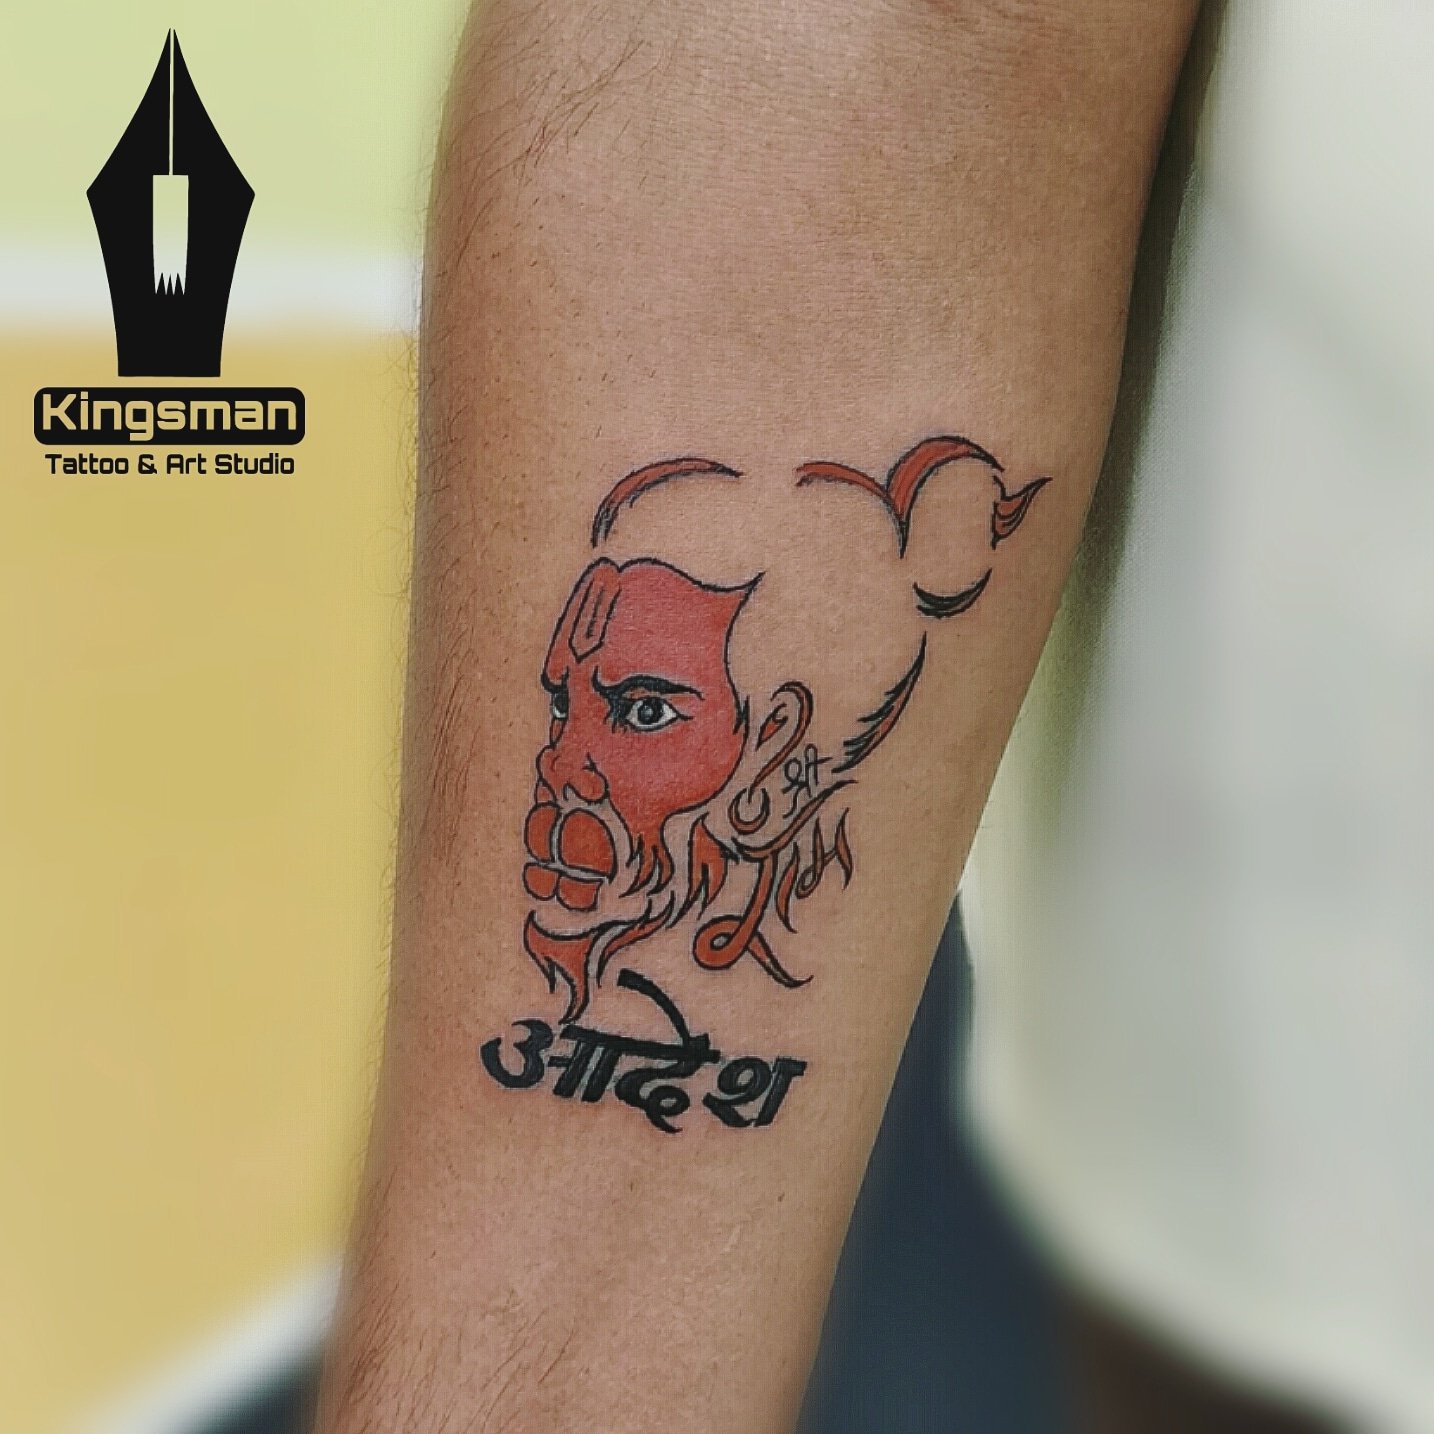 Tript Tattoo in SukhraliDelhi  Best Tattoo Artists in Delhi  Justdial